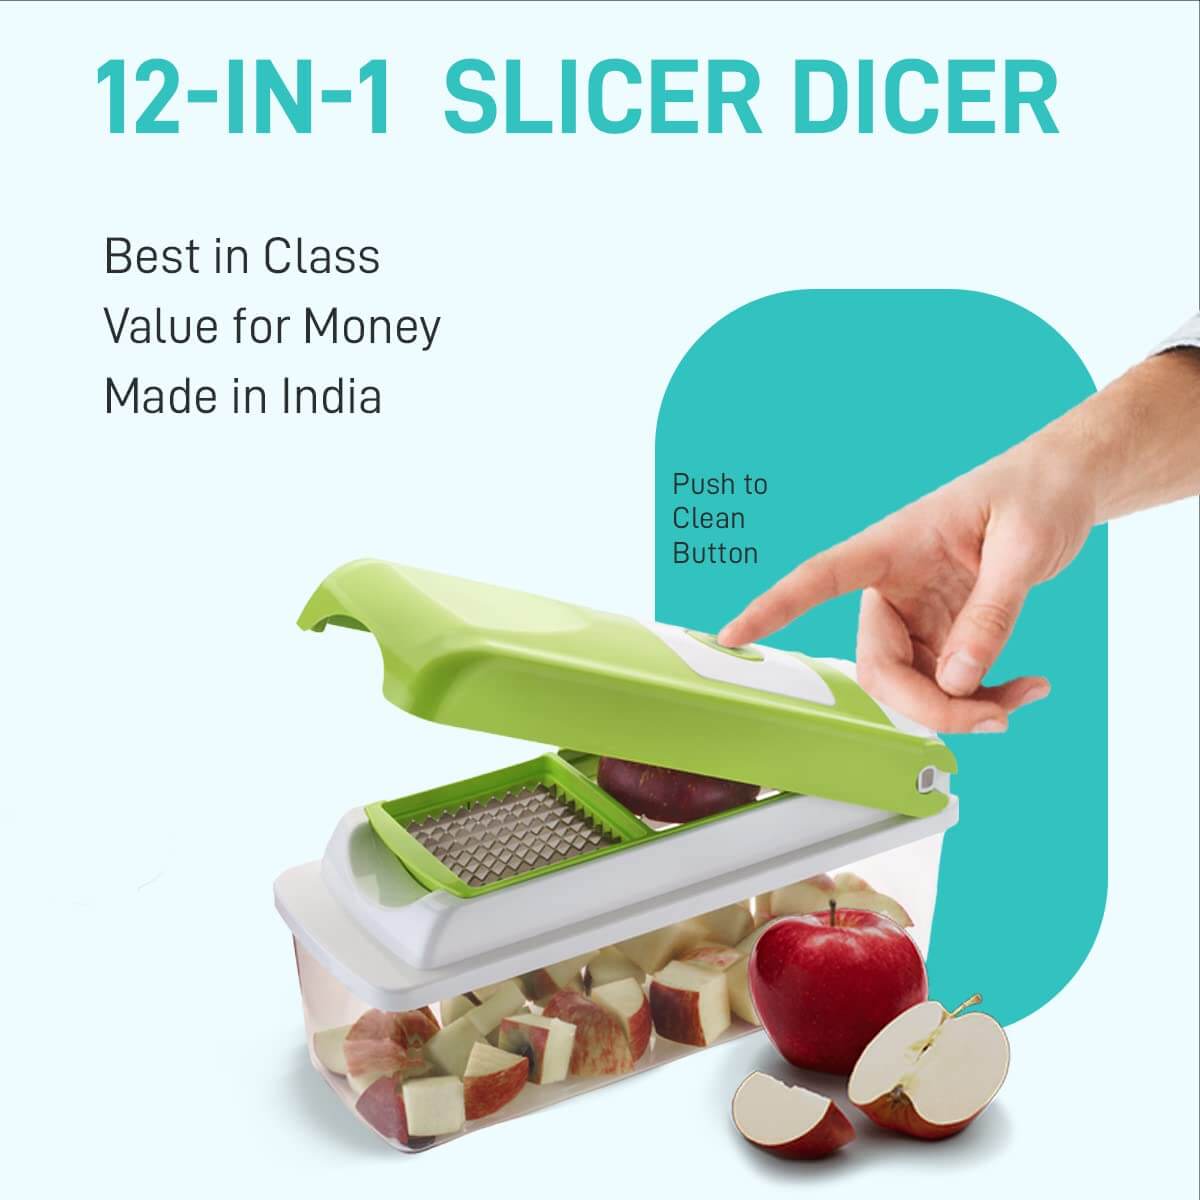 12-in-1 Slicer Dicer